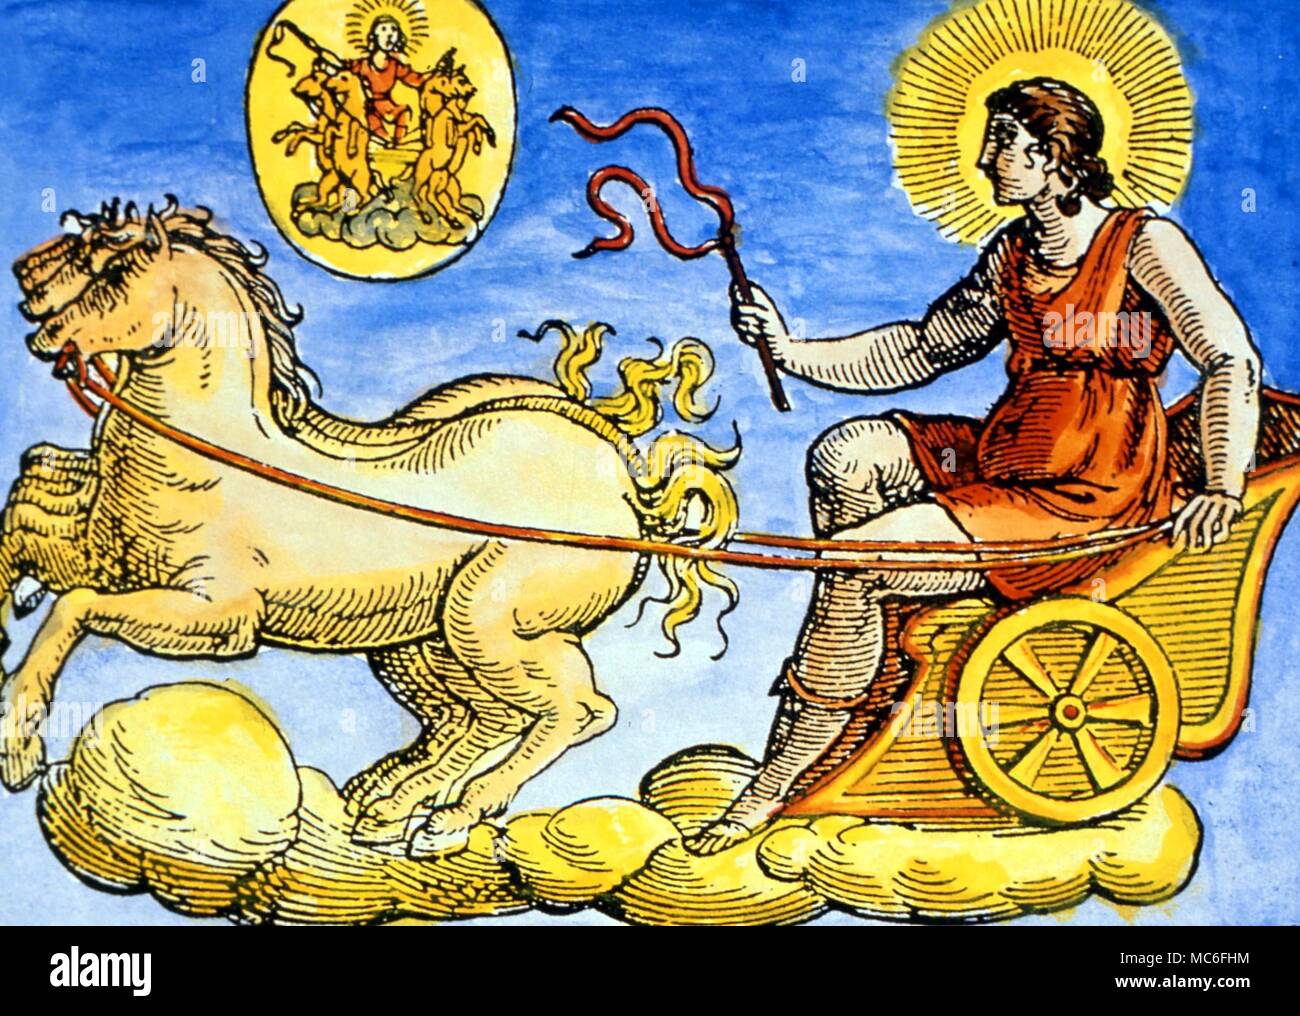 Helios, il dio del sole, nella sua a cavallo il carro. Da Natalis Comitis, 'Mythologiae', Lib. V. secolo XVII edizione. Collezione privata Foto Stock